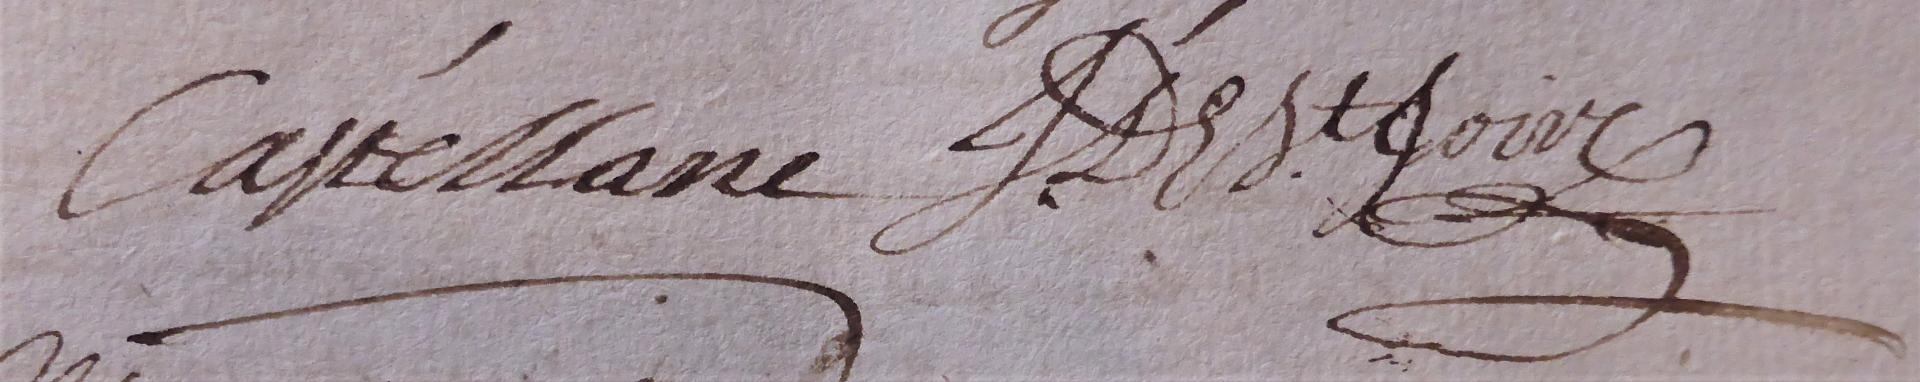 Signature du comte de Castellane et de son architecte Saint-Joire, ©PhCachau